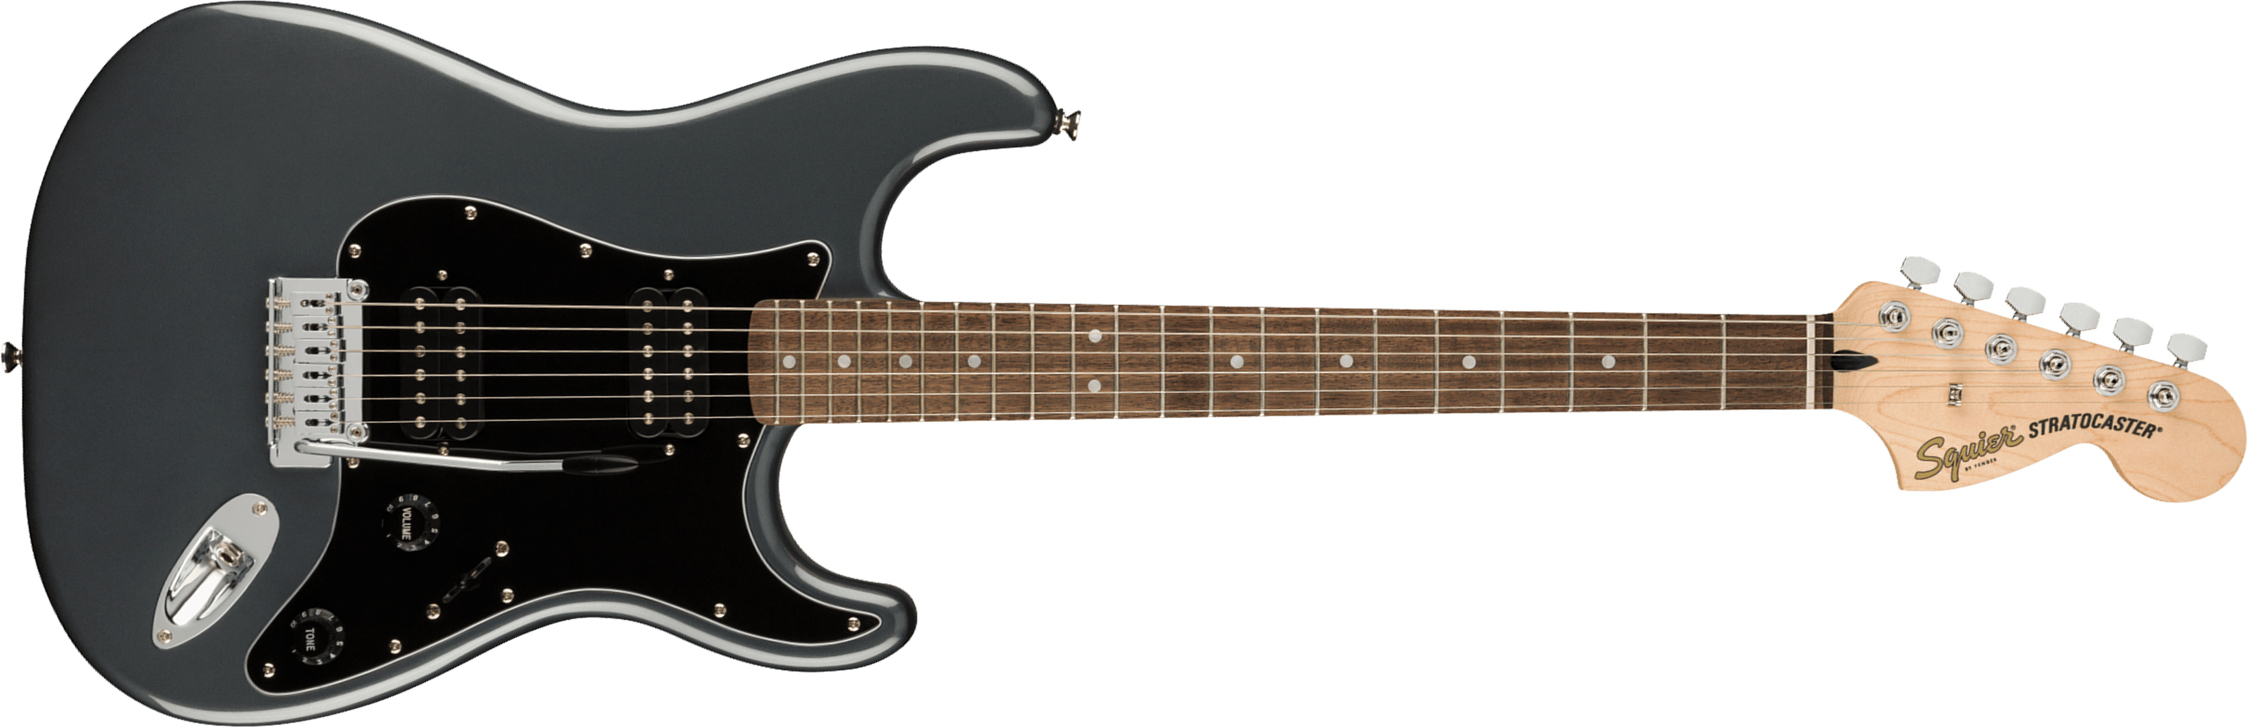 Squier Strat Affinity 2021 Hh Trem Lau - Charcoal Frost Metallic - Guitarra eléctrica con forma de str. - Main picture